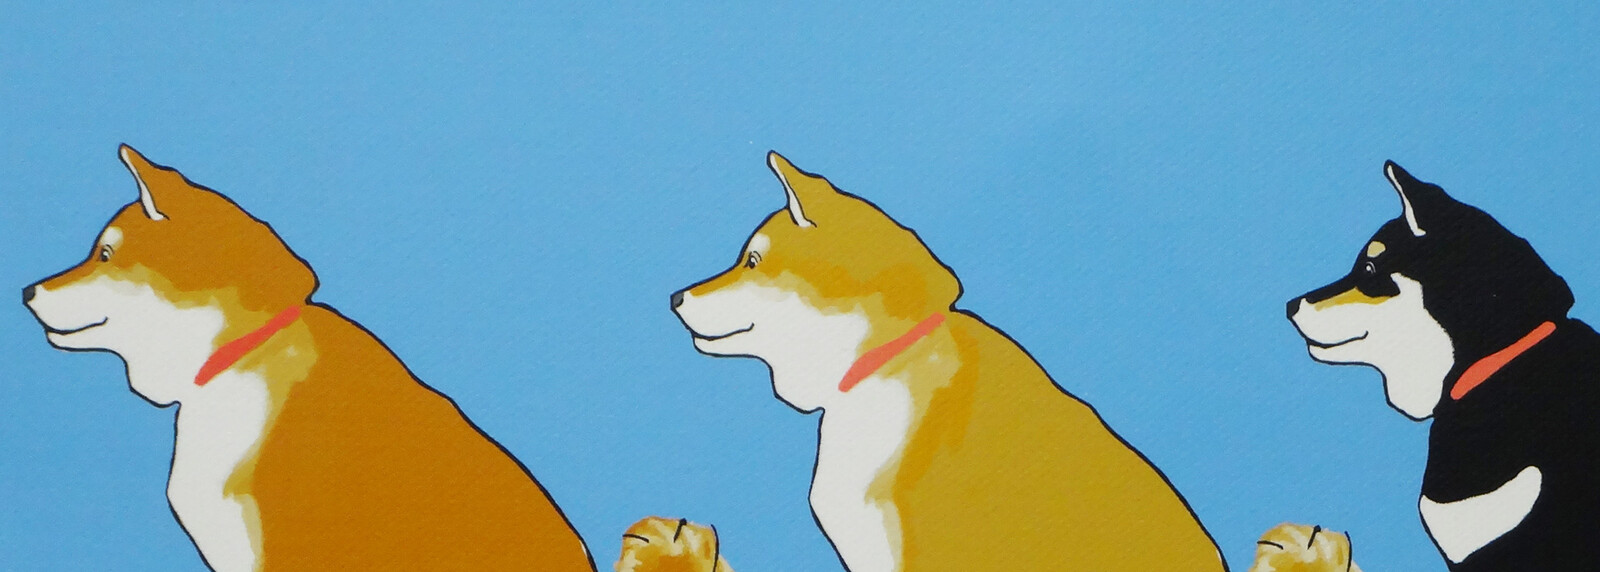 キャンバスアート 柴犬 Ilove Shibaの商品ページ 卸 仕入れサイト スーパーデリバリー